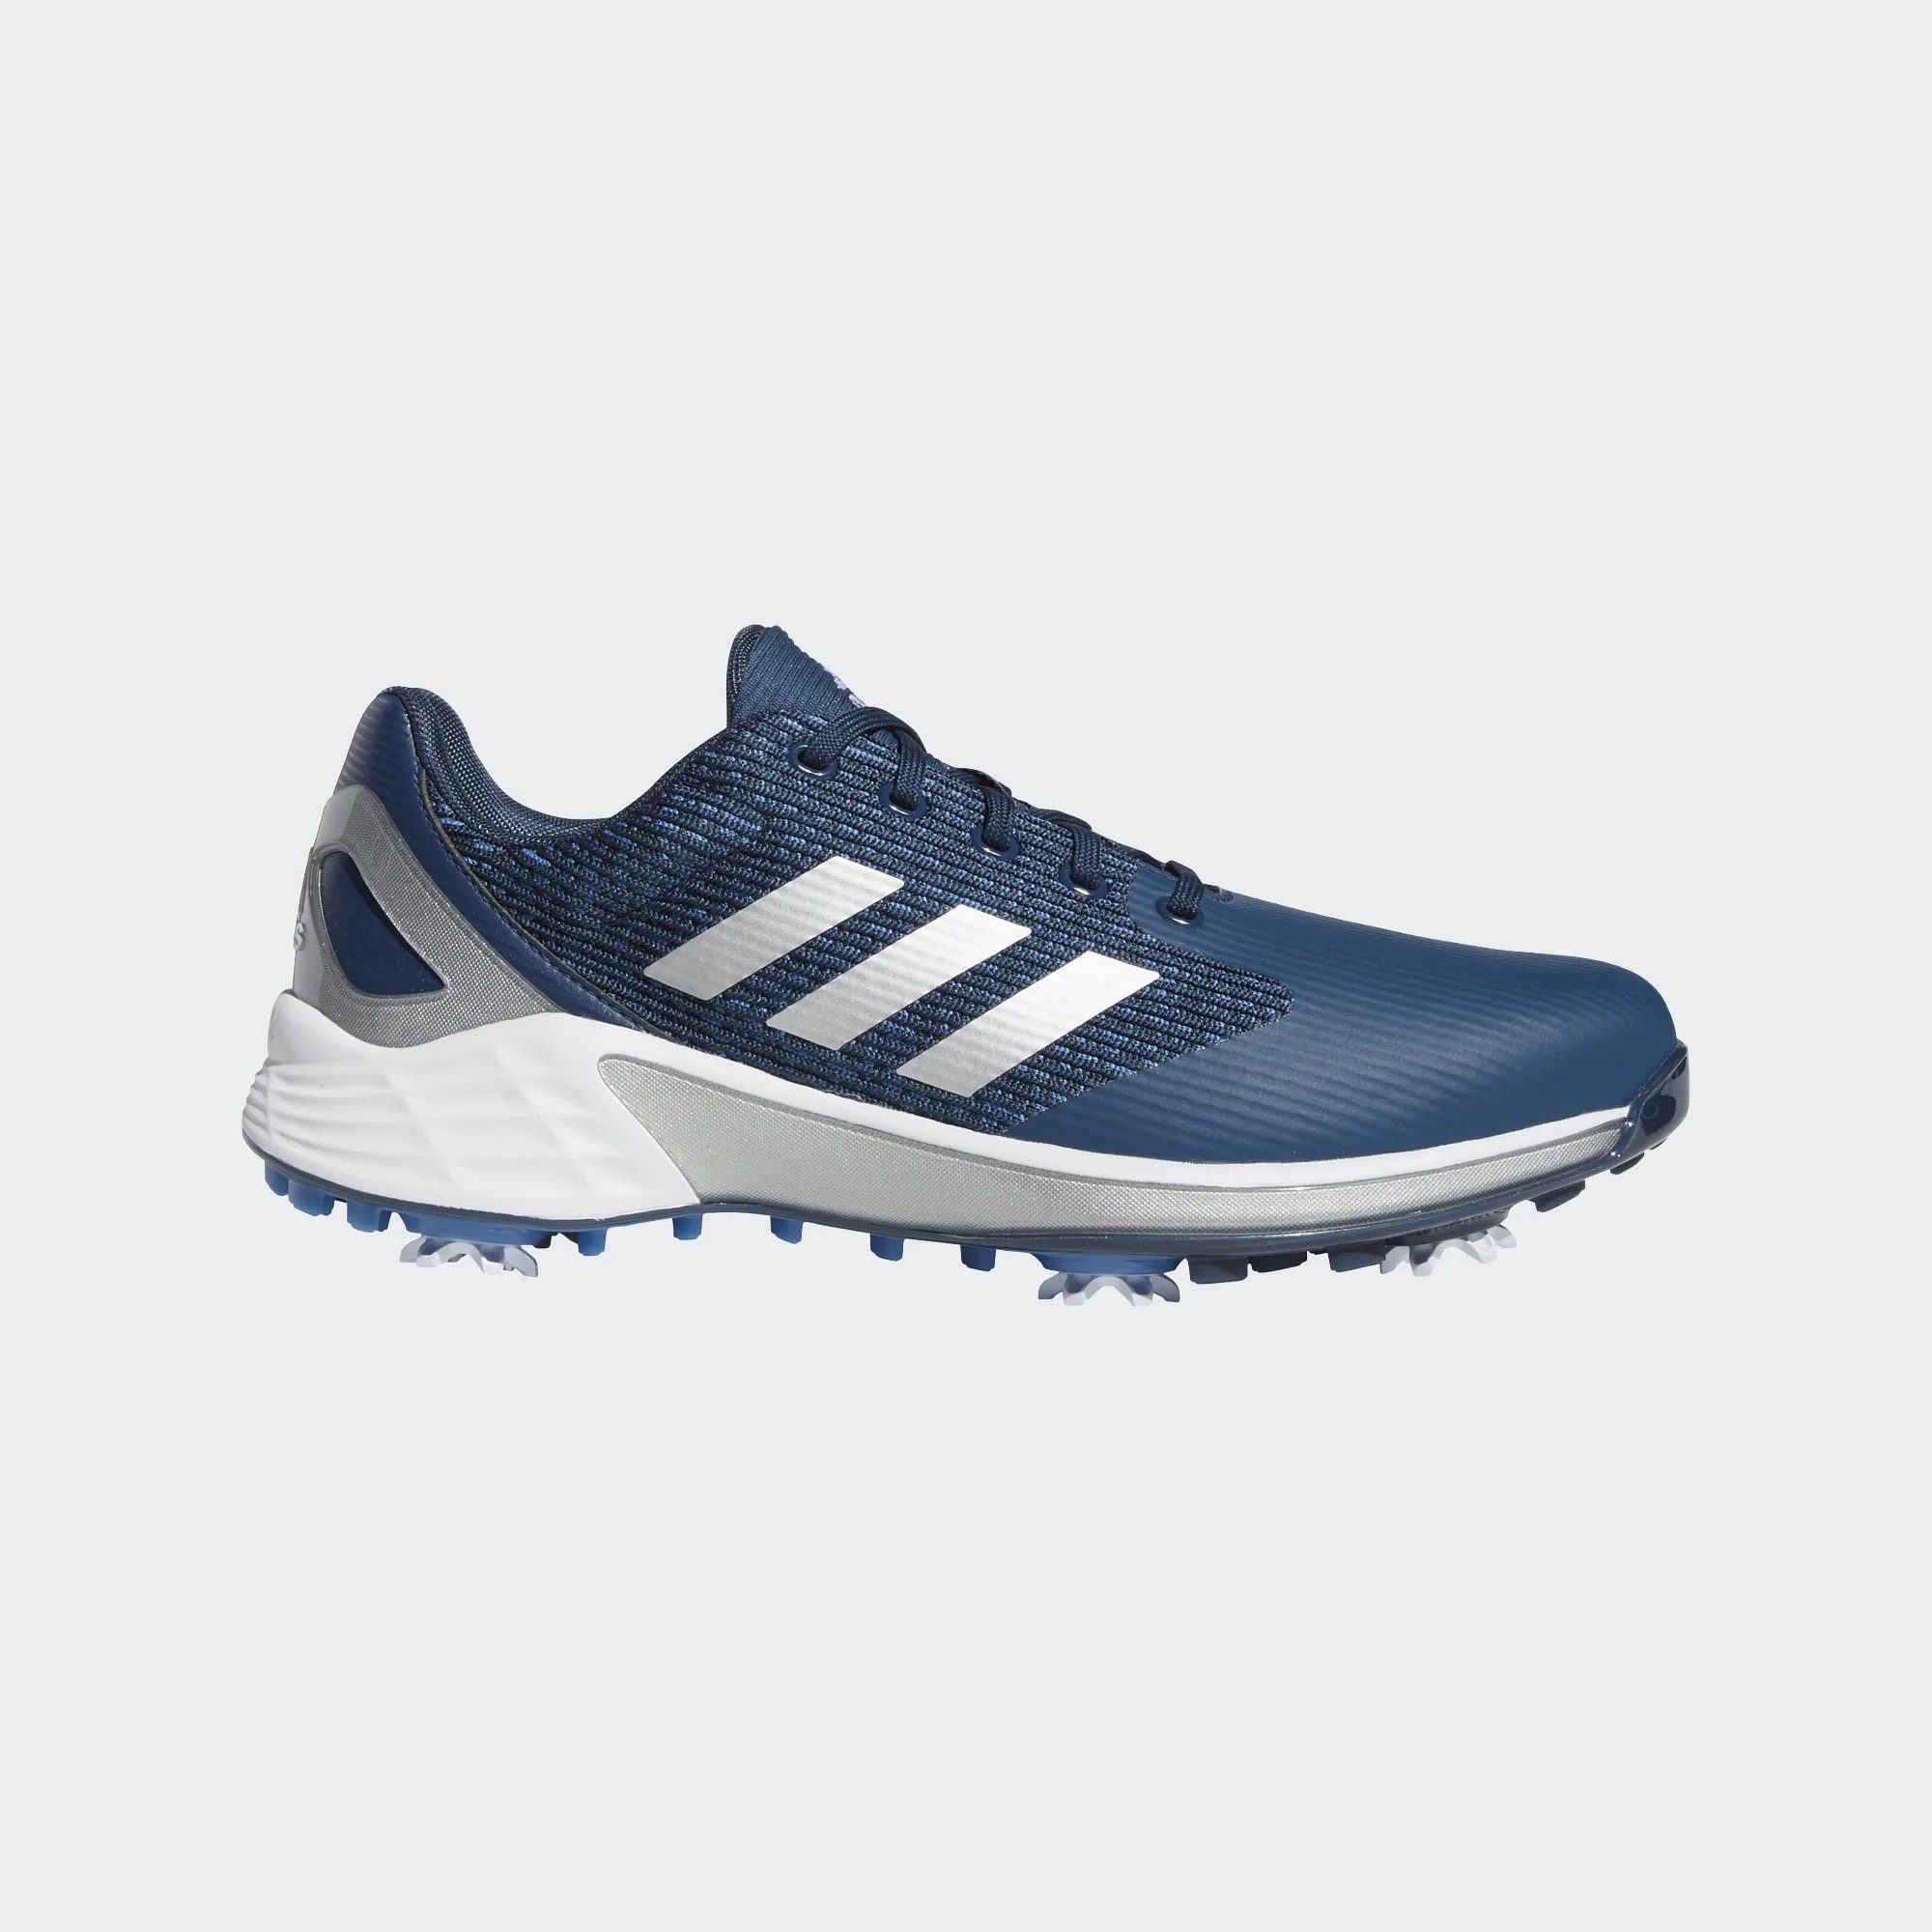 Motion Herren adidas ZG Golfschuh Grey/Blue/Yellow 21 Sportswear Zwischensohle Adidas Boost